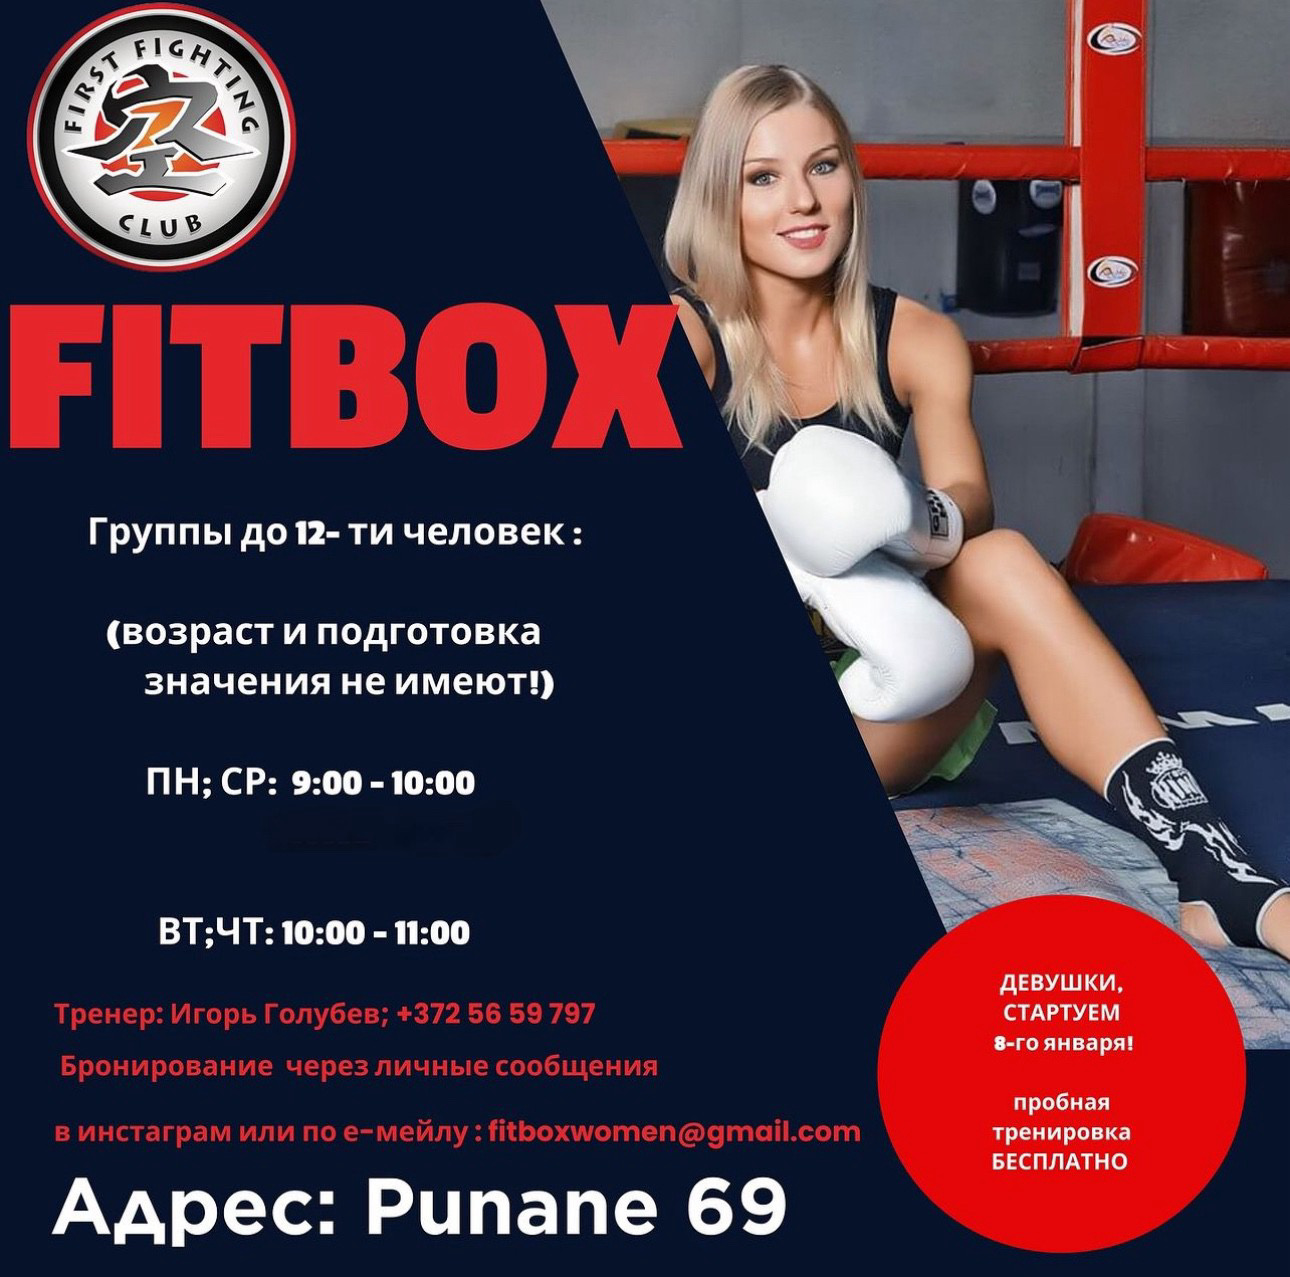 Приглашаем на новую тренироку FITBOX!